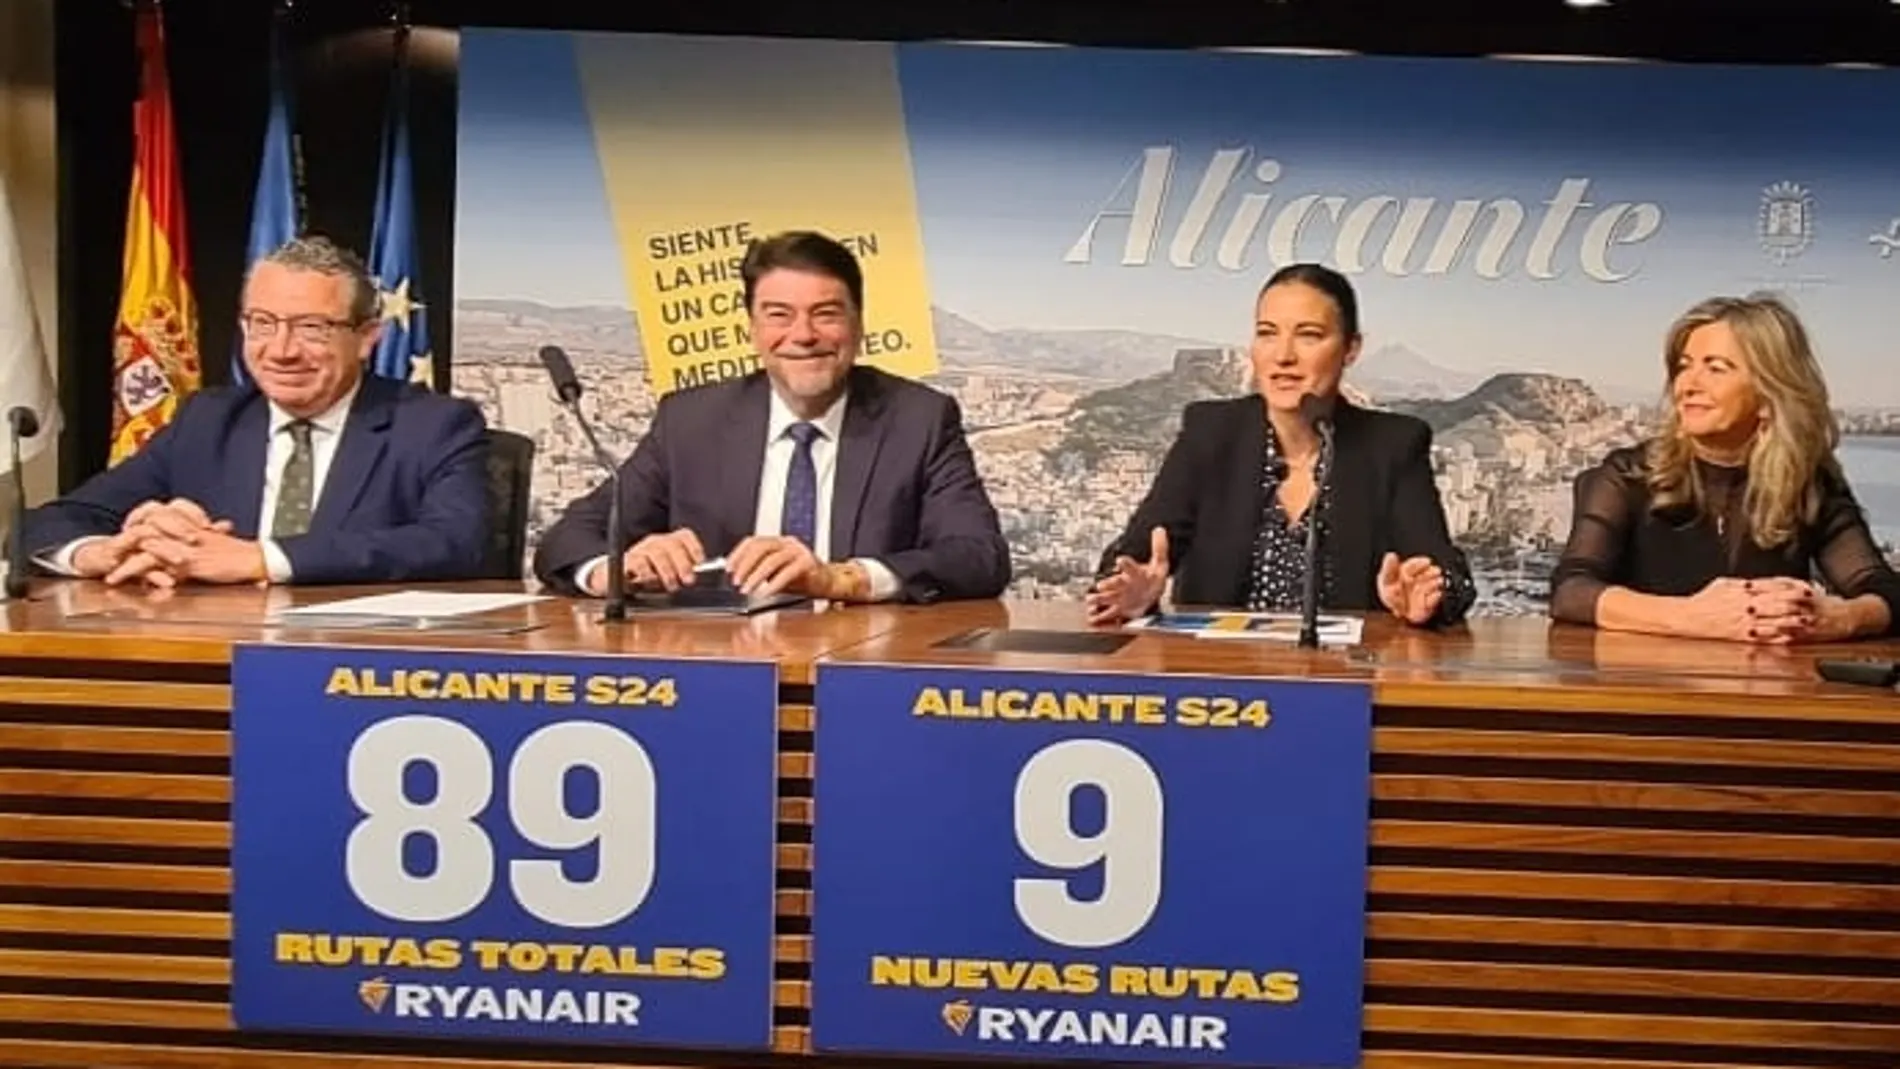 Acto de presentación hoy de las nuevas rutas de Ryanair desde el aeropuerto de Alicante-Elche-Miguel Hernández